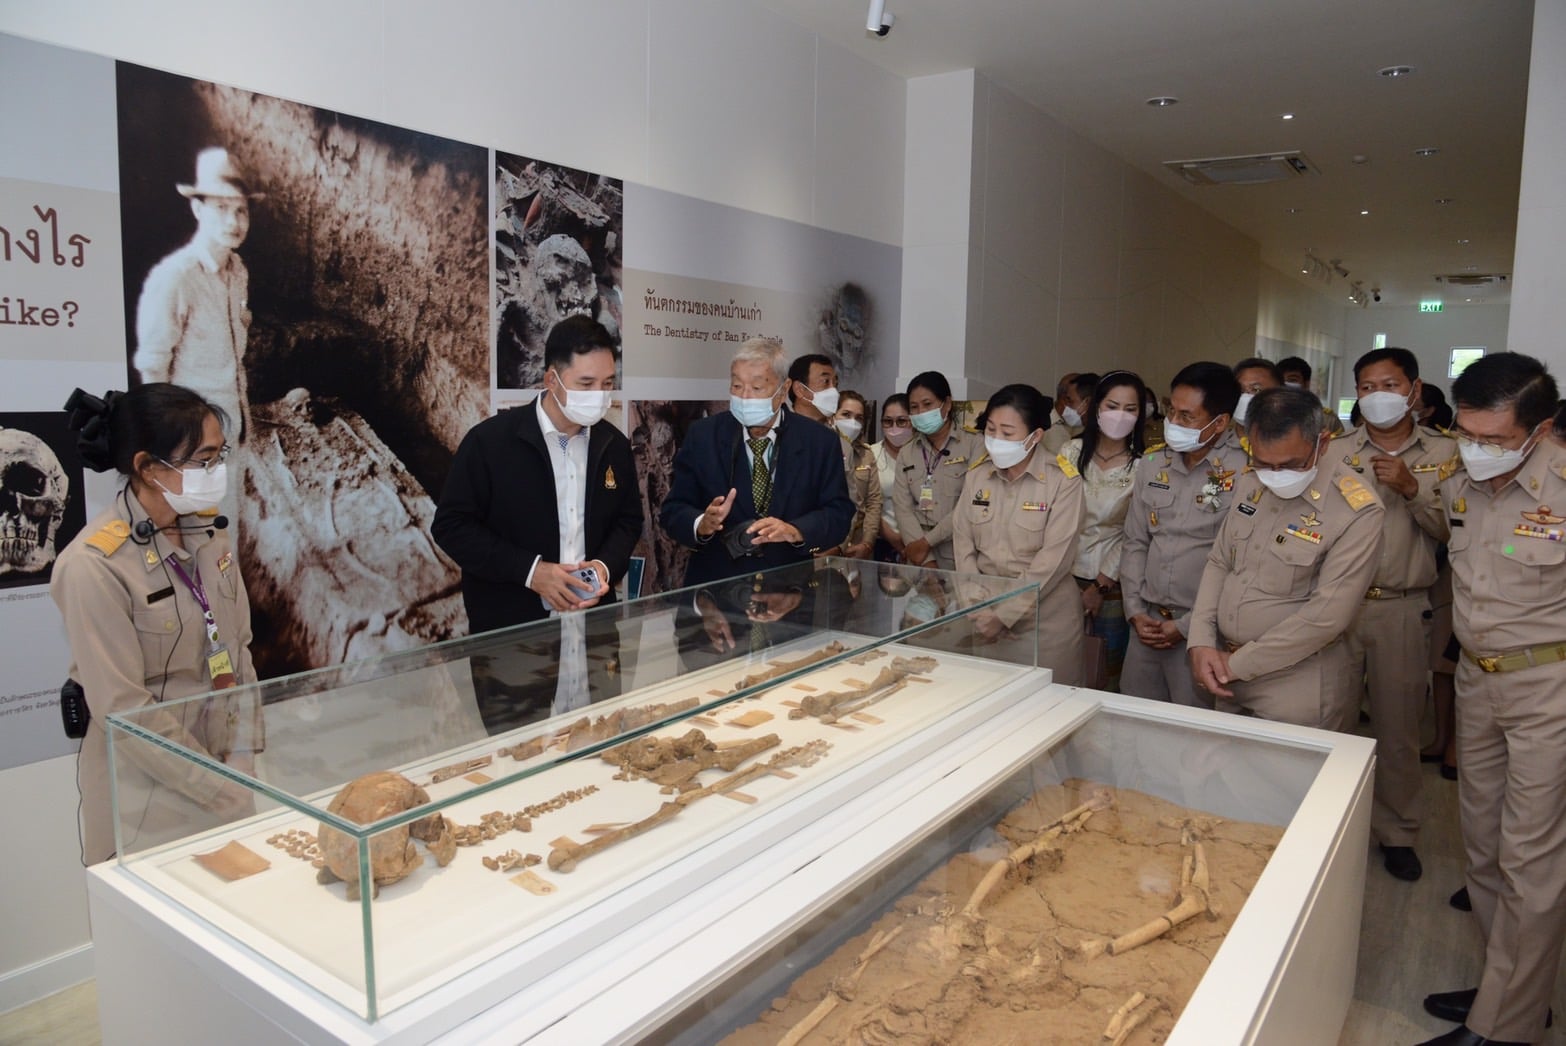 พิธีเปิดนิทรรศการถาวรพิพิธภัณฑสถานแห่งชาติ บ้านเก่า จังหวัดกาญจนบุรี